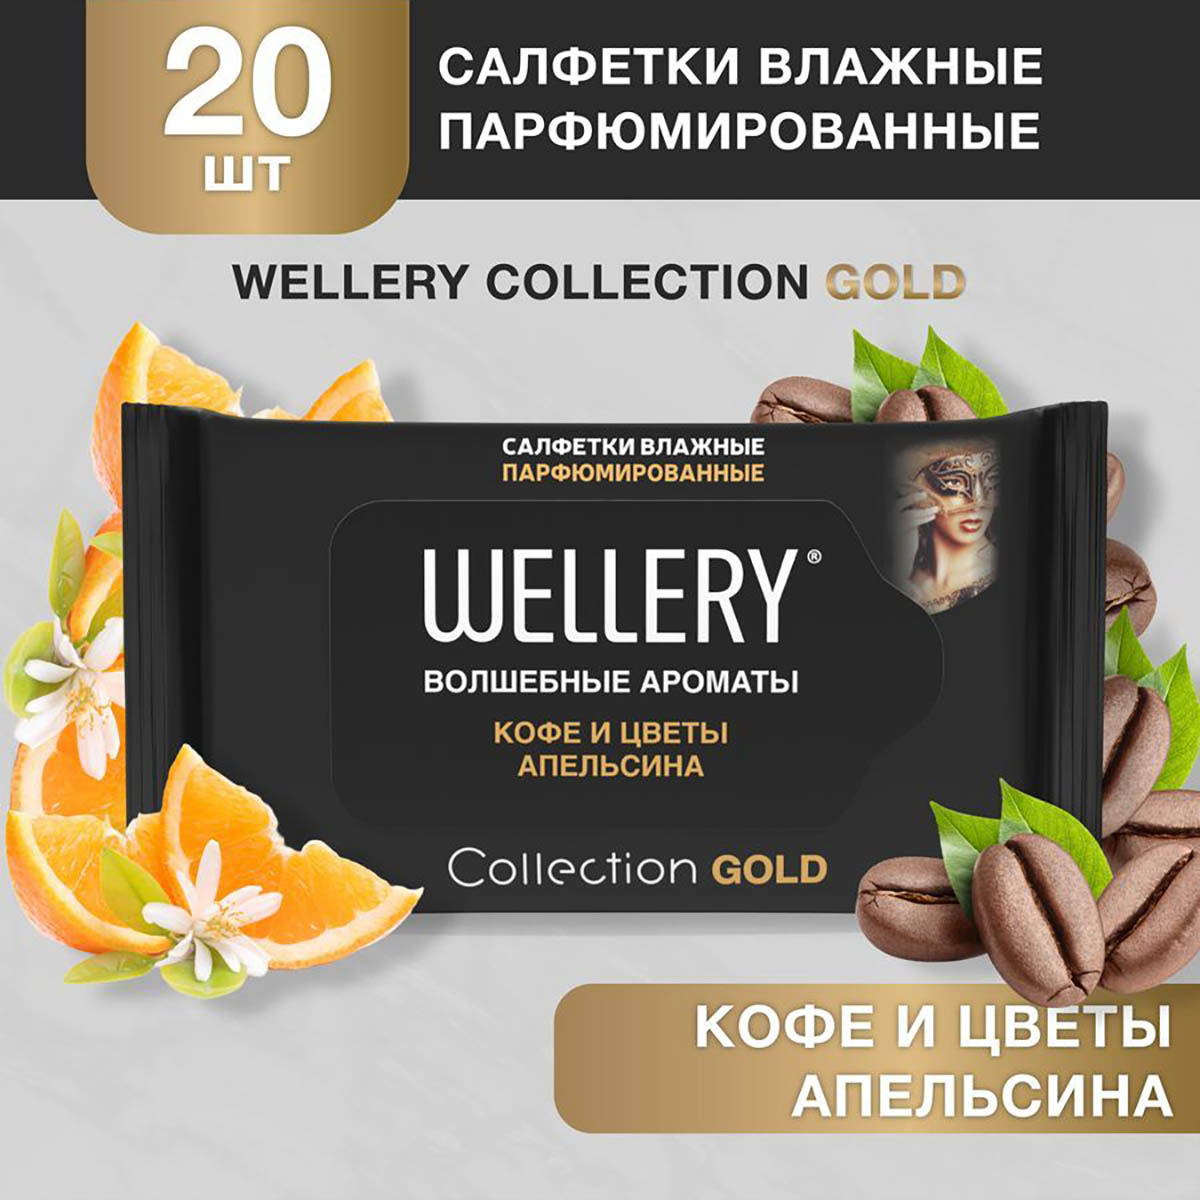 Салфетки влажные Wellery Collection Gold универсальные, кофе и цветы апельсина 20 шт